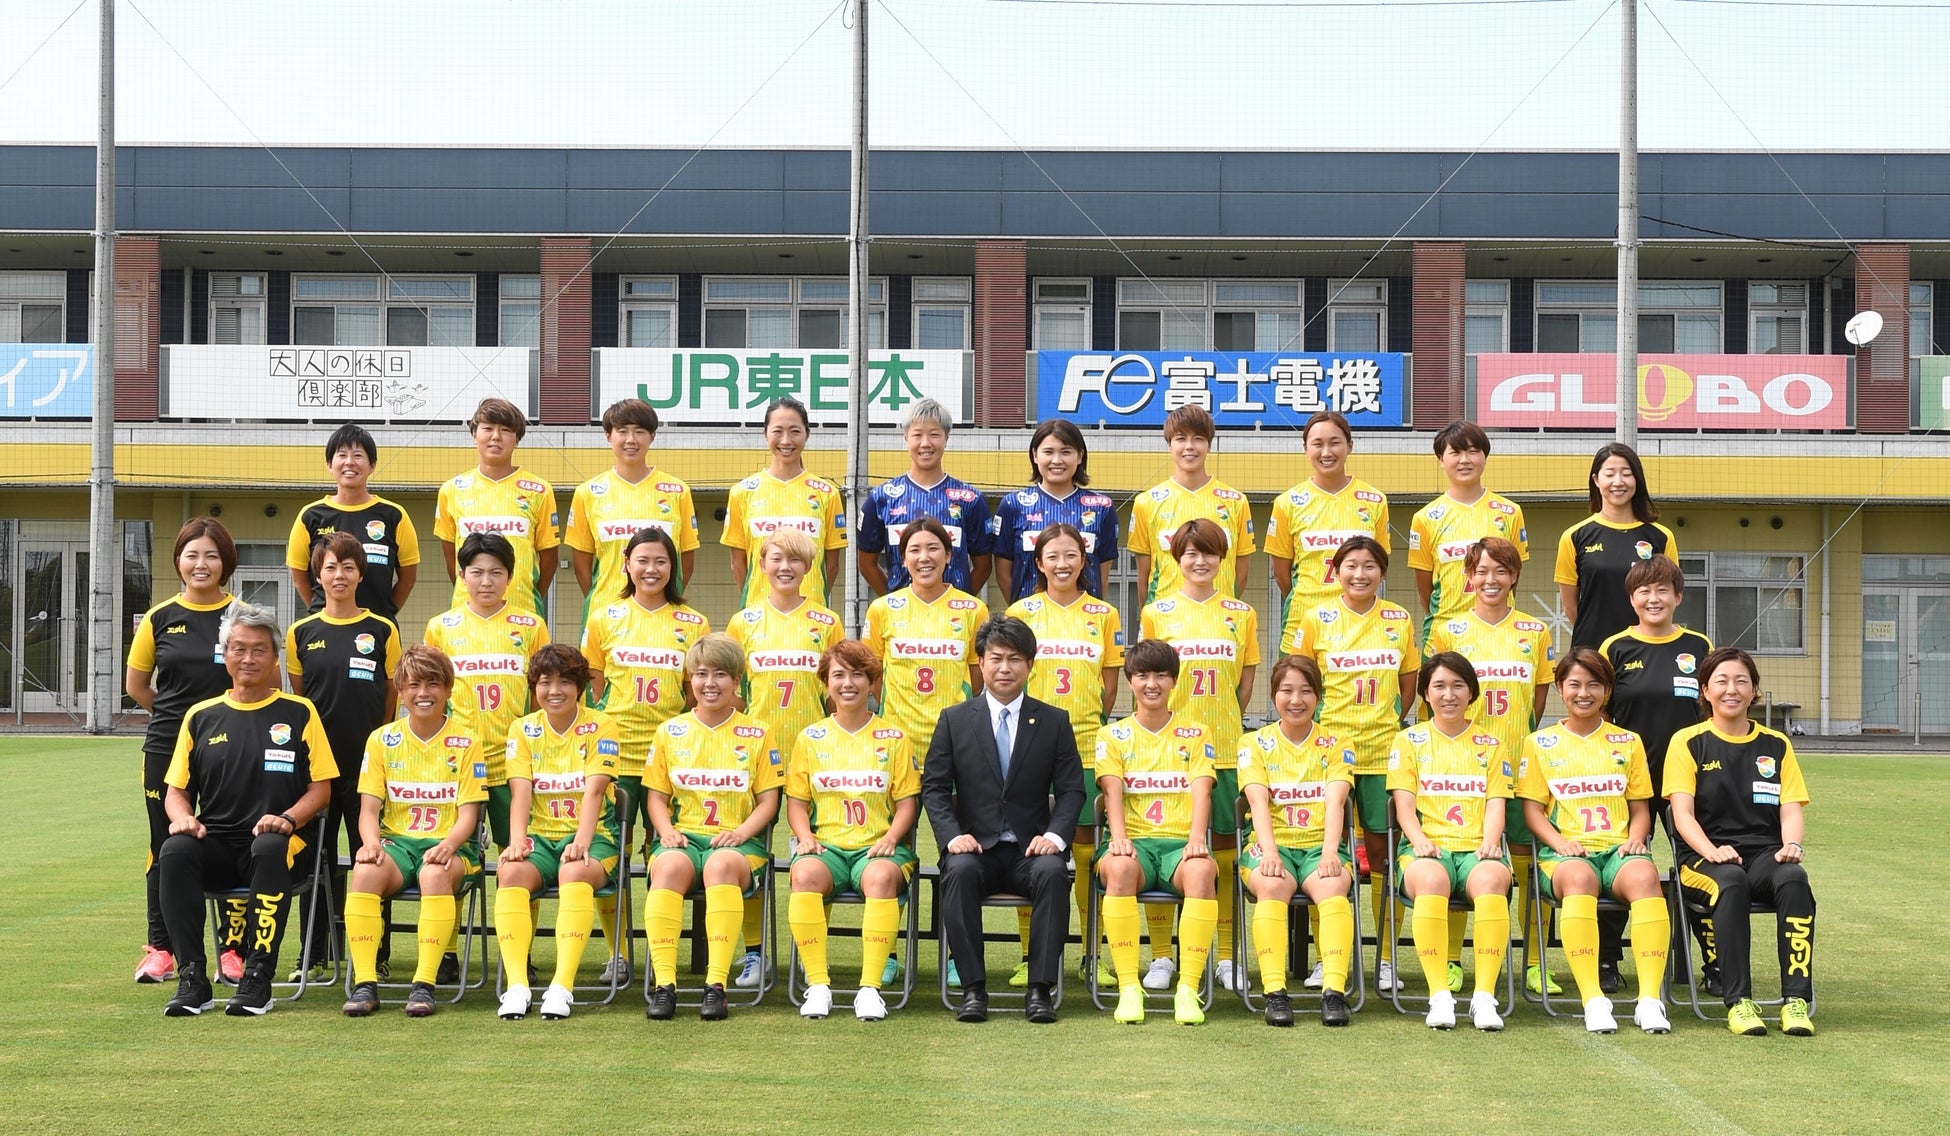 藤沢市初の女子プロサッカーチームを目指す『江の島FC』、新たなパートナー企業様を募集。